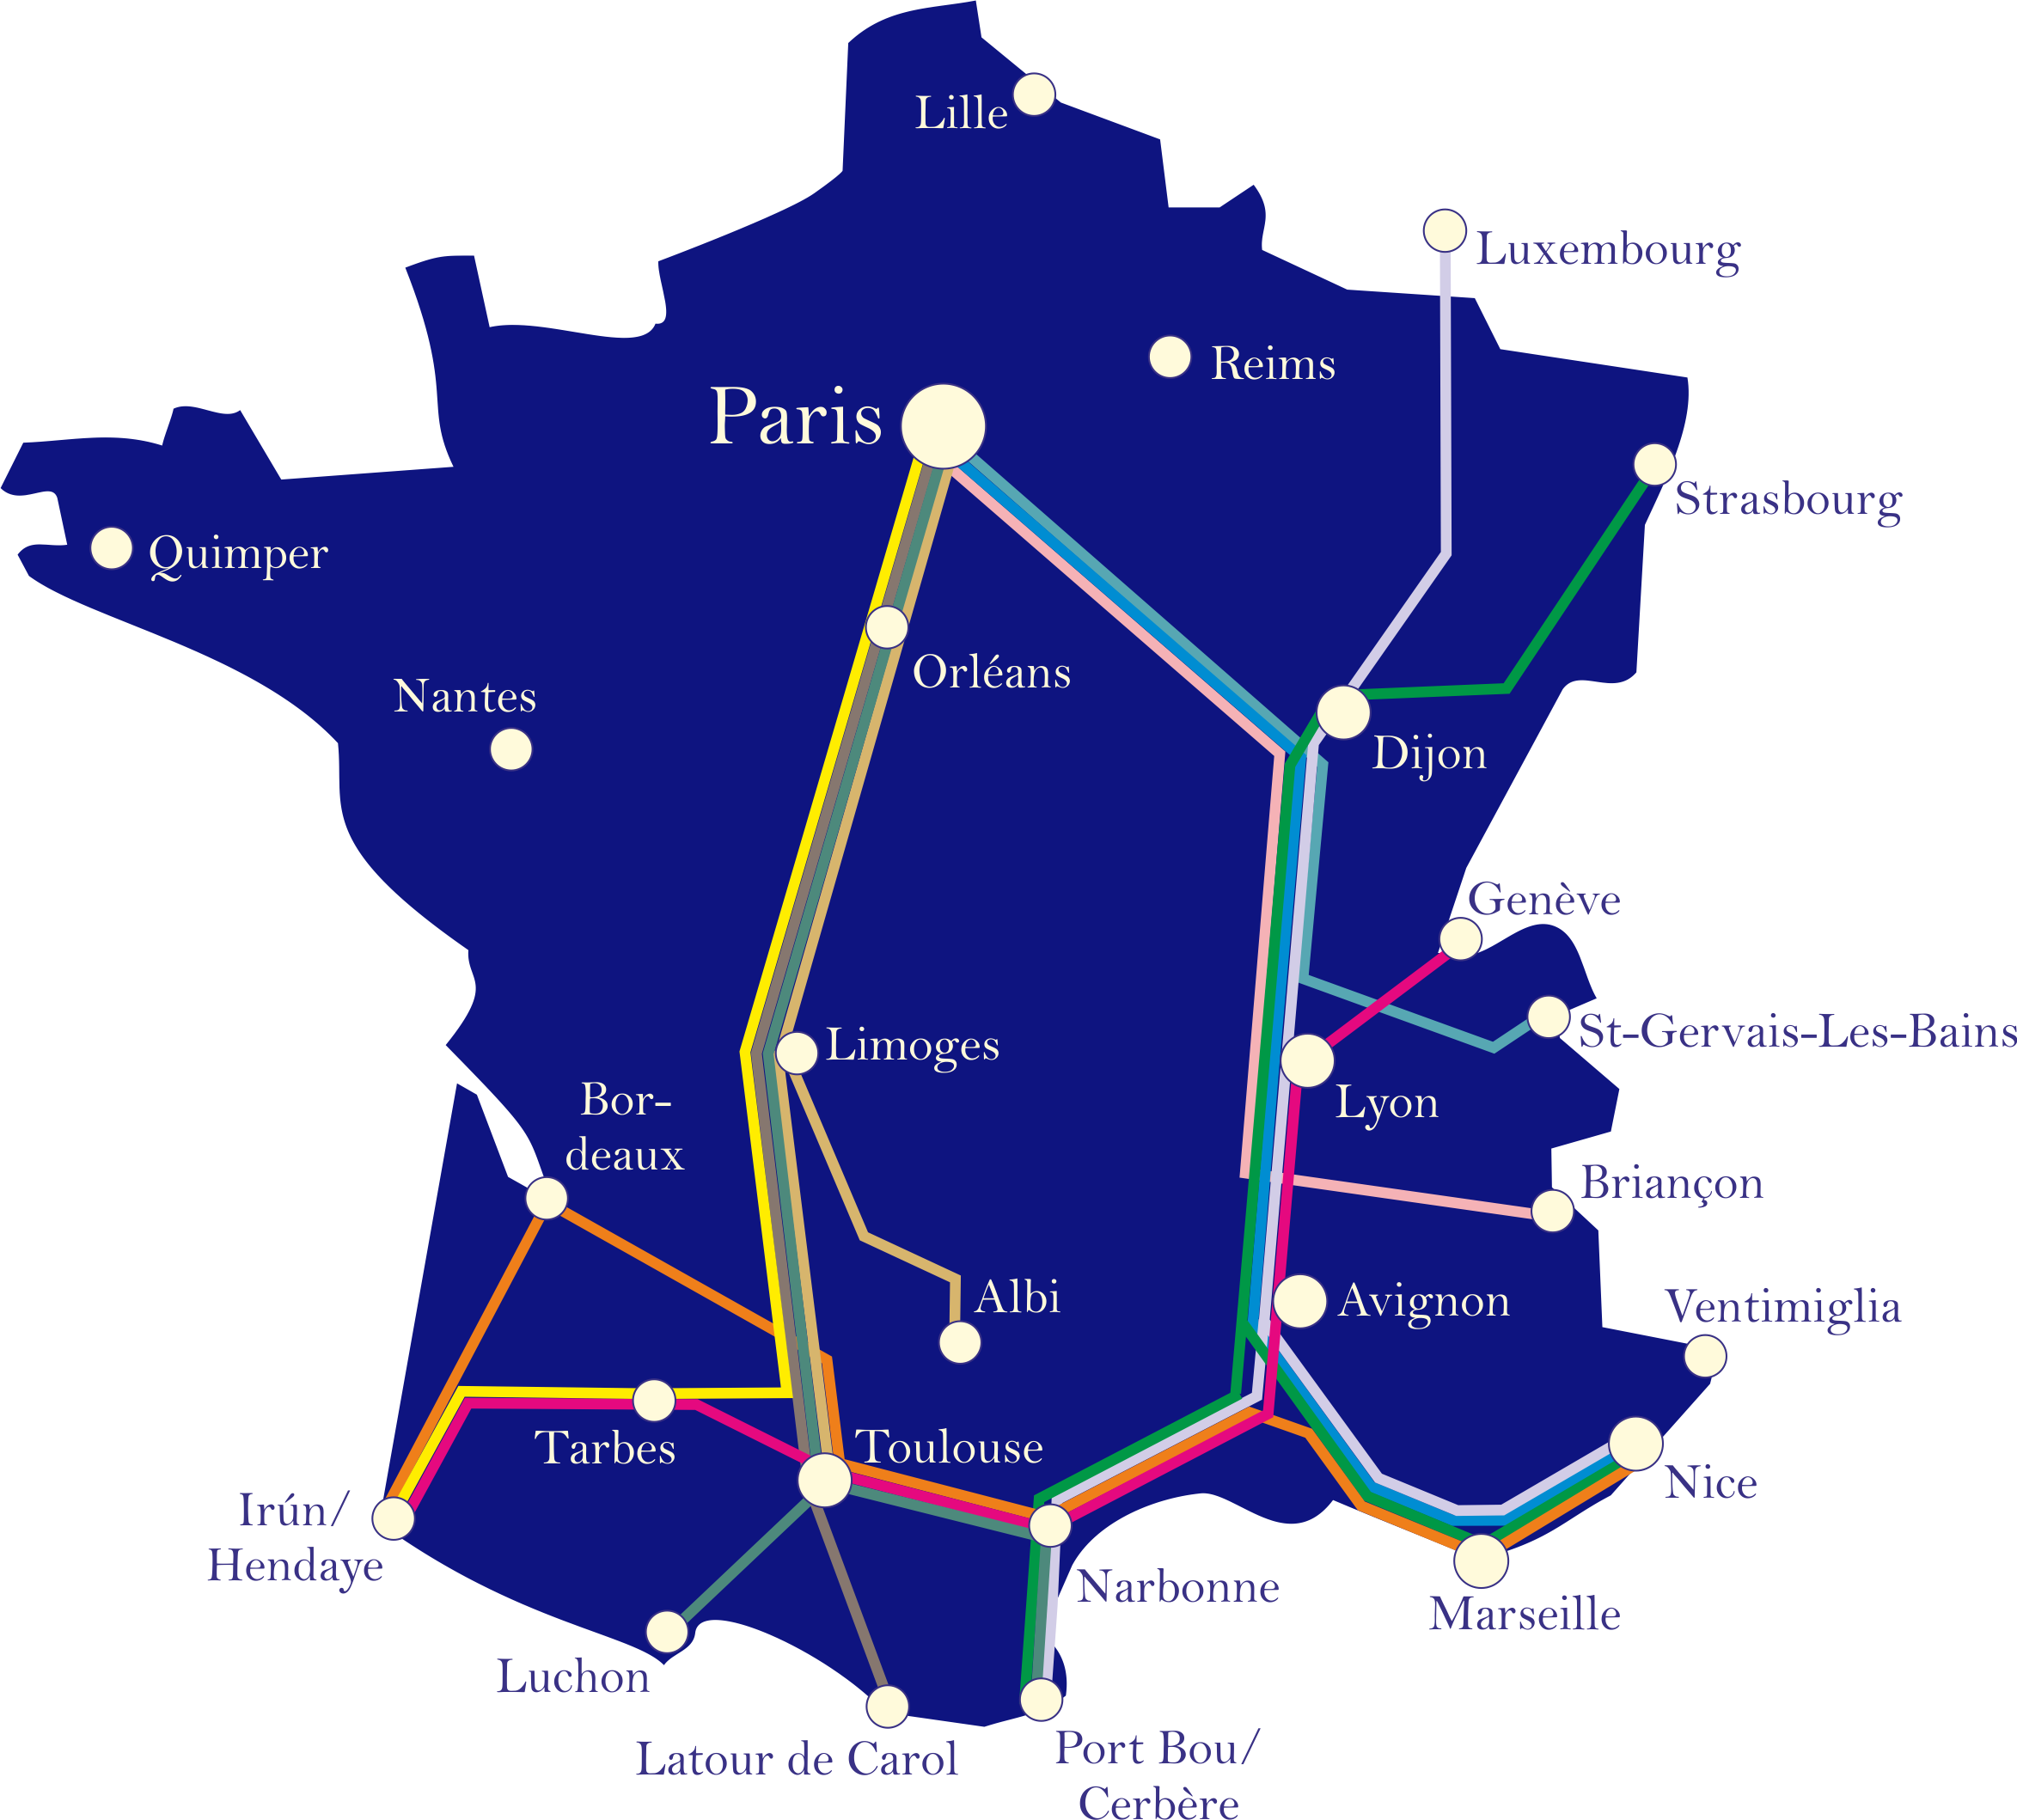 Как добраться на поезде в Каркасон (Carcassonne): расписание, стоимость билетов на поезда в Каркассон, маршруты поездов, направления, купить билет на поезд, Франция, Лангедок-Русийон, расписание поездов Каркассон, расписание поездов каркасон, тариф на билет в Каркасон, сколько стоит билет в Каркасон, когда отправляется поезд в Каркасон, прямые поезда в Каркасон, Carcassonne by train timetable ticket price, France travel guide french cities sights arrival departure